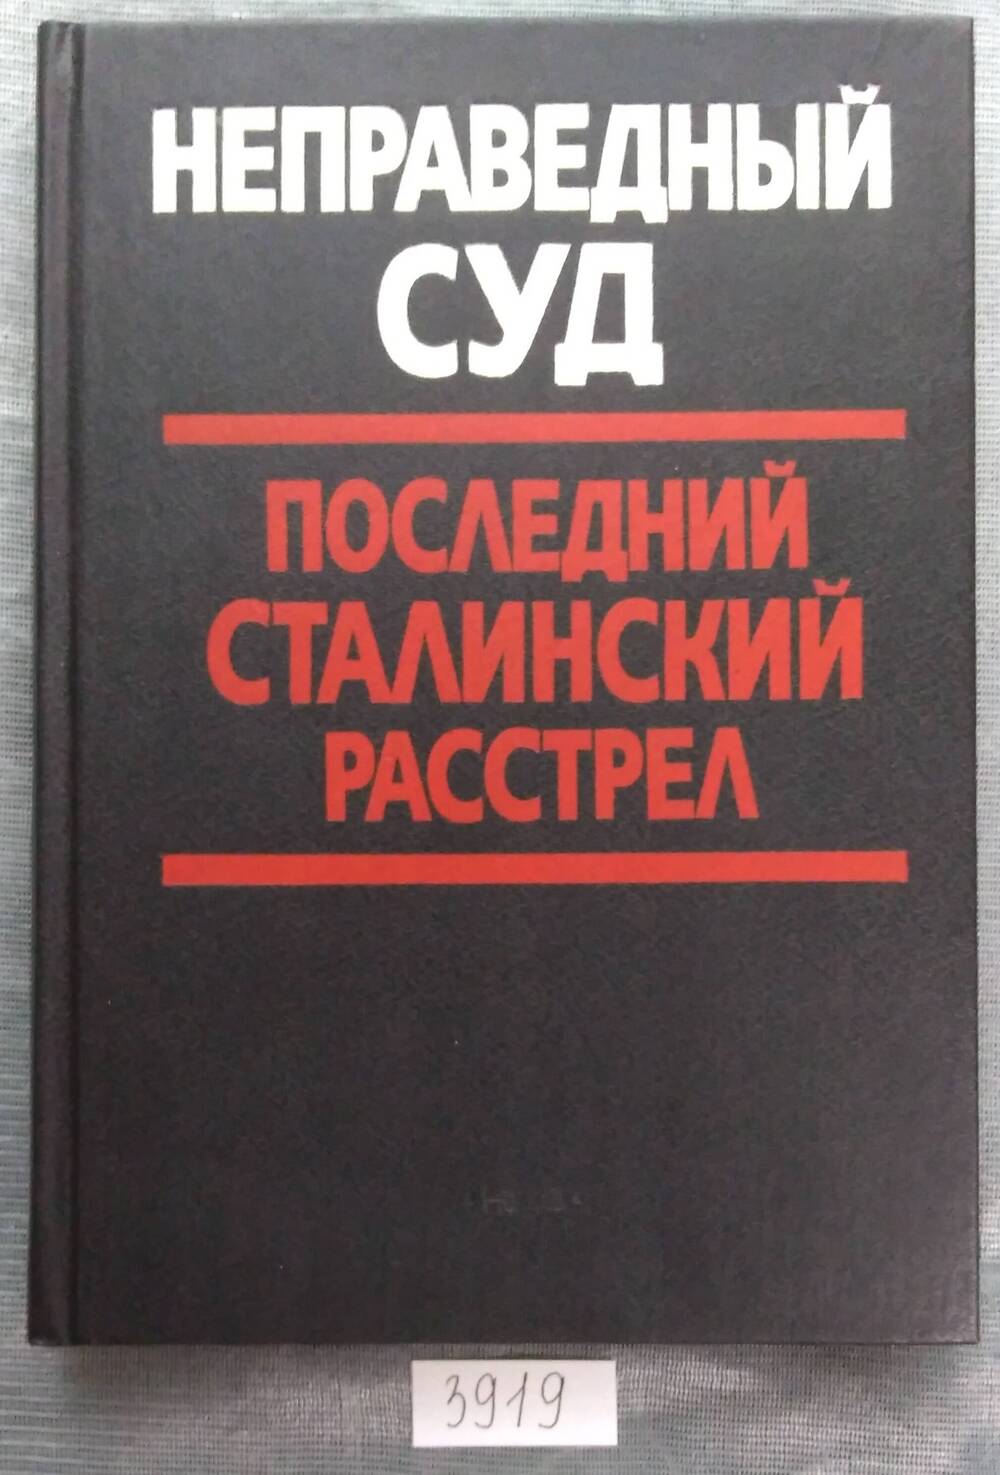 Книга печатная. Неправедный суд. Последний сталинский расстрел.